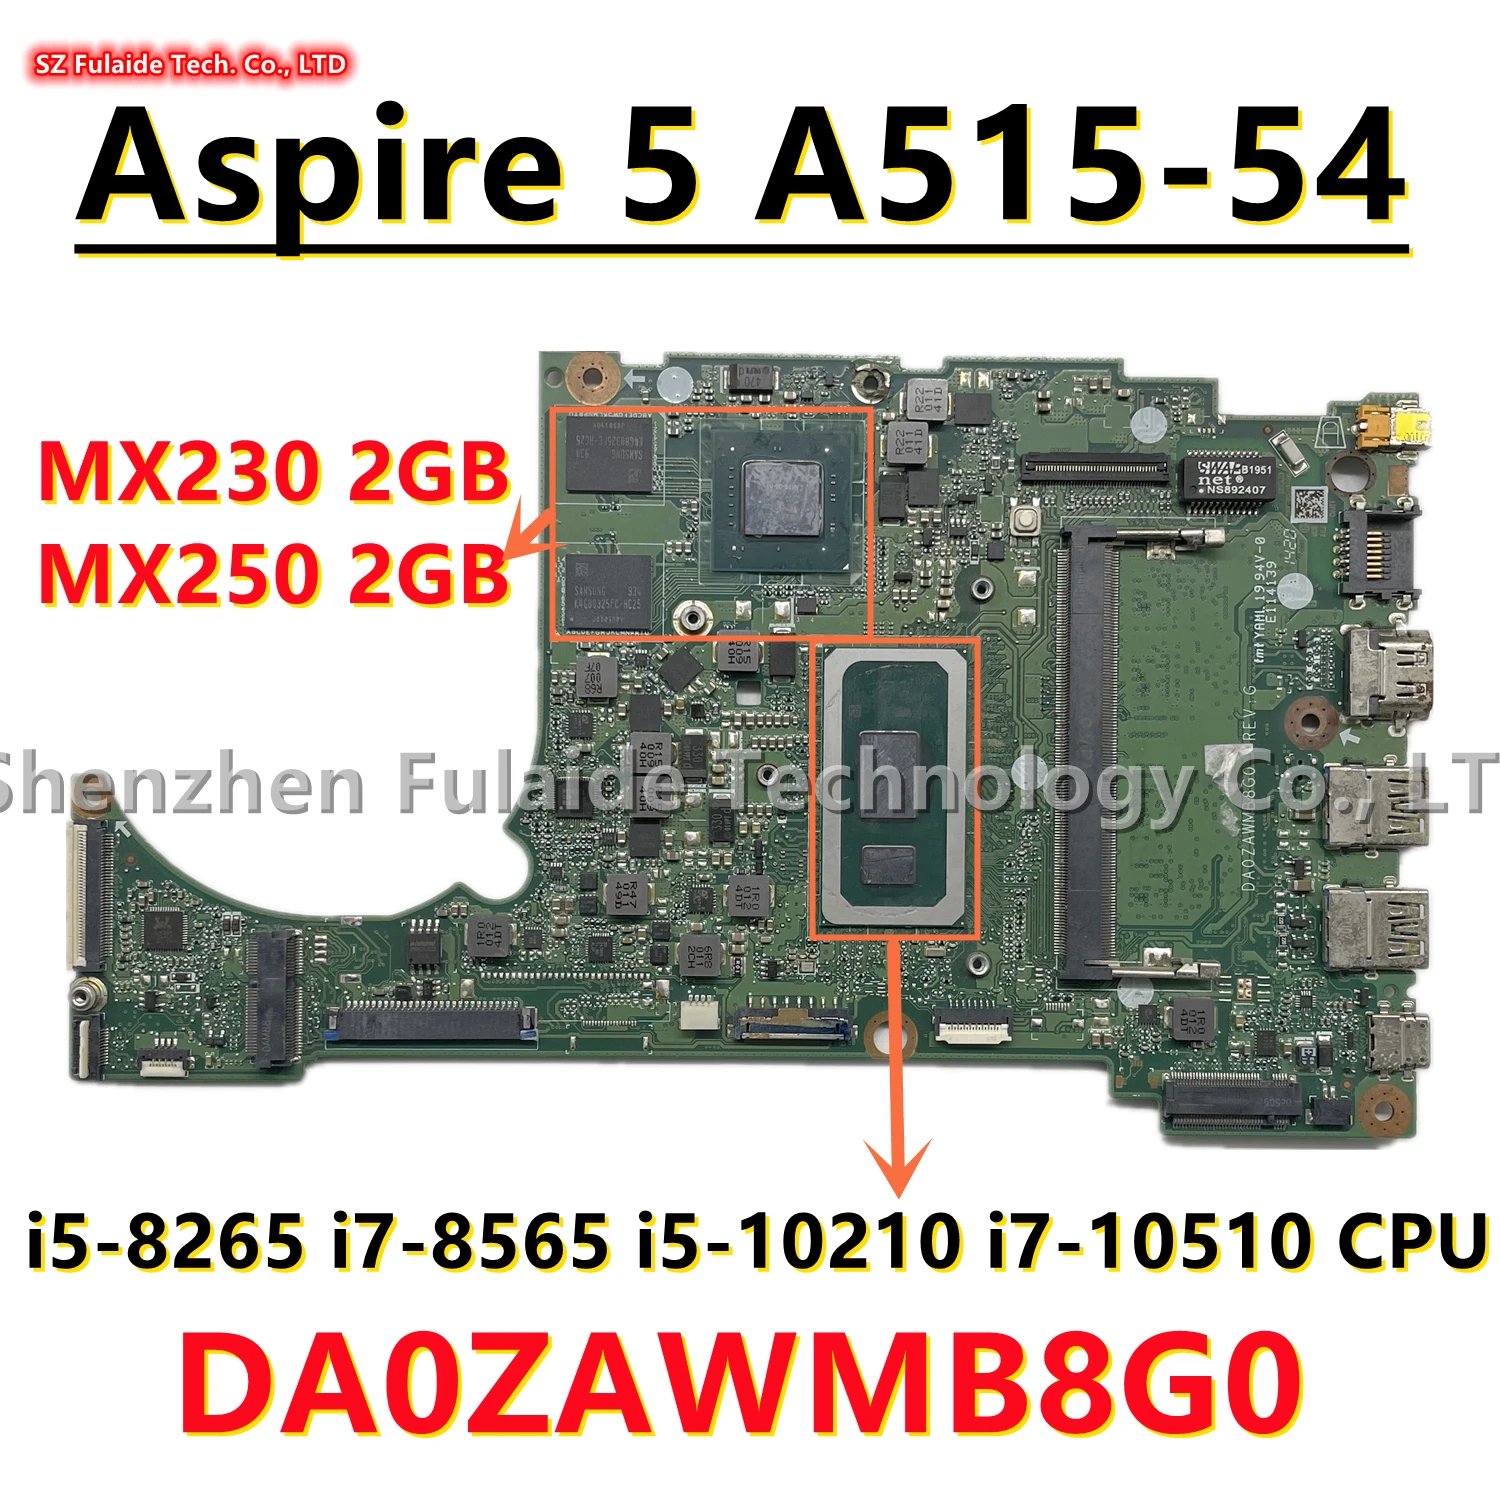 

DA0ZAWMB8G0 For Acer Aspire 5 A515-54 Laptop Motherboard i5-8265 i7-8565 i5-10210 i7-10510 CPU MX230/MX250 2GB GPU 0GB/4GB-RAM